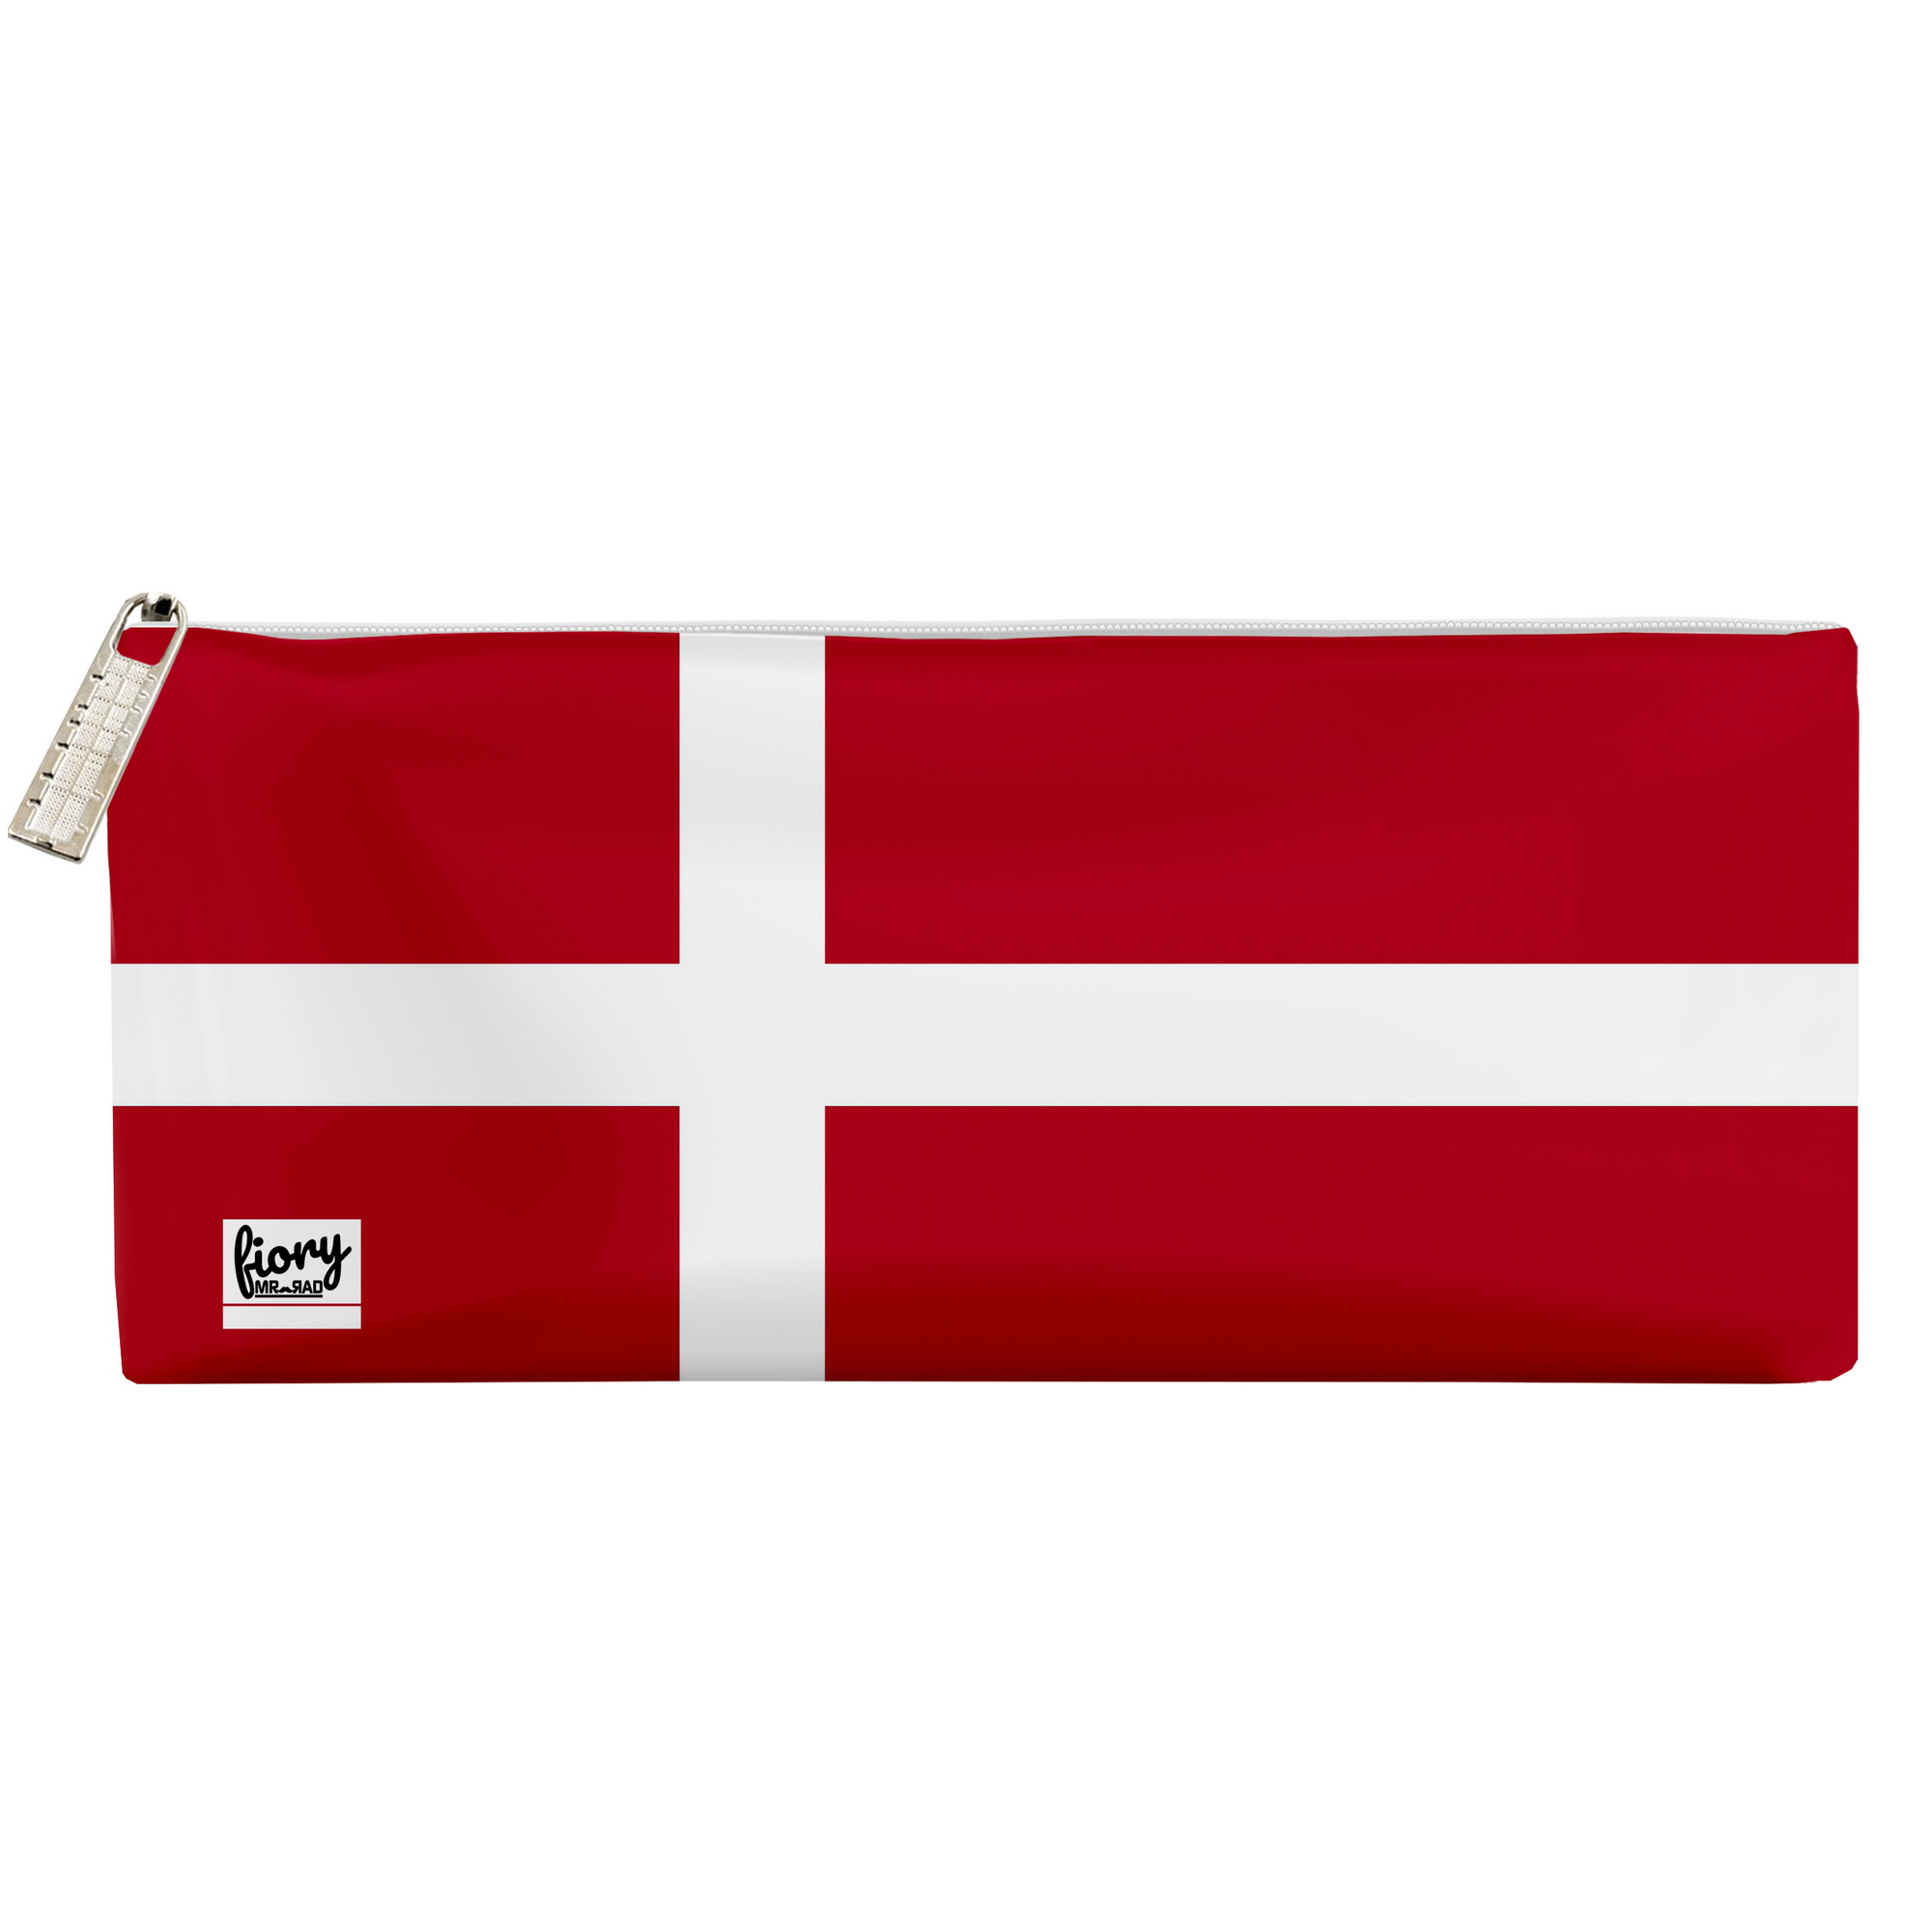 جامدادی مستر راد مدل پرچم دانمارک کد fiory 2015